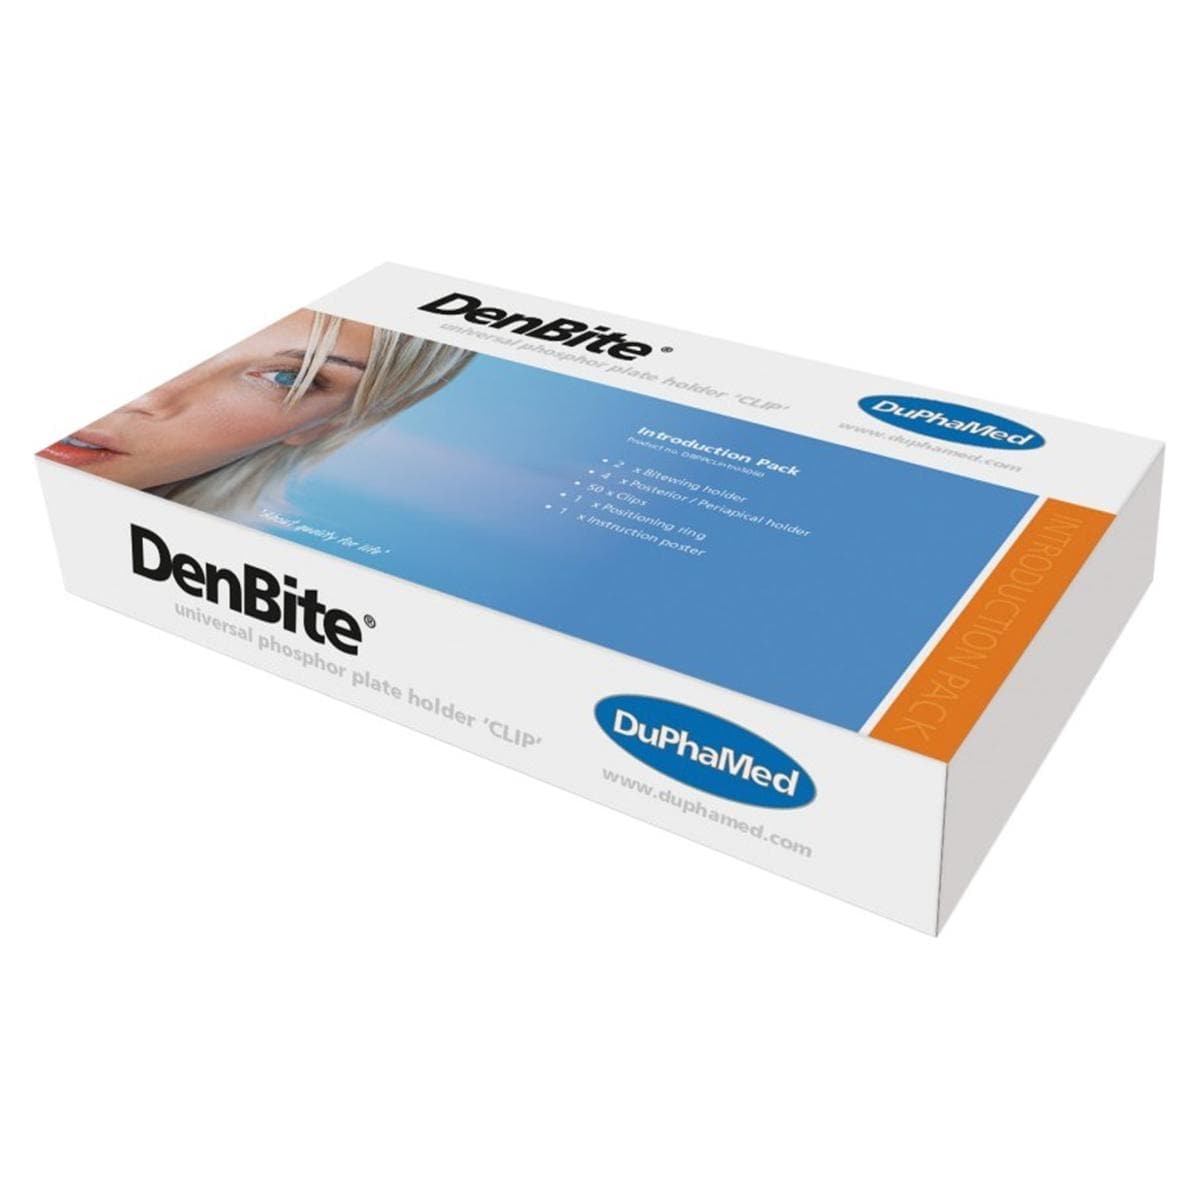 DenBite The Clip Positioning kit - 73710